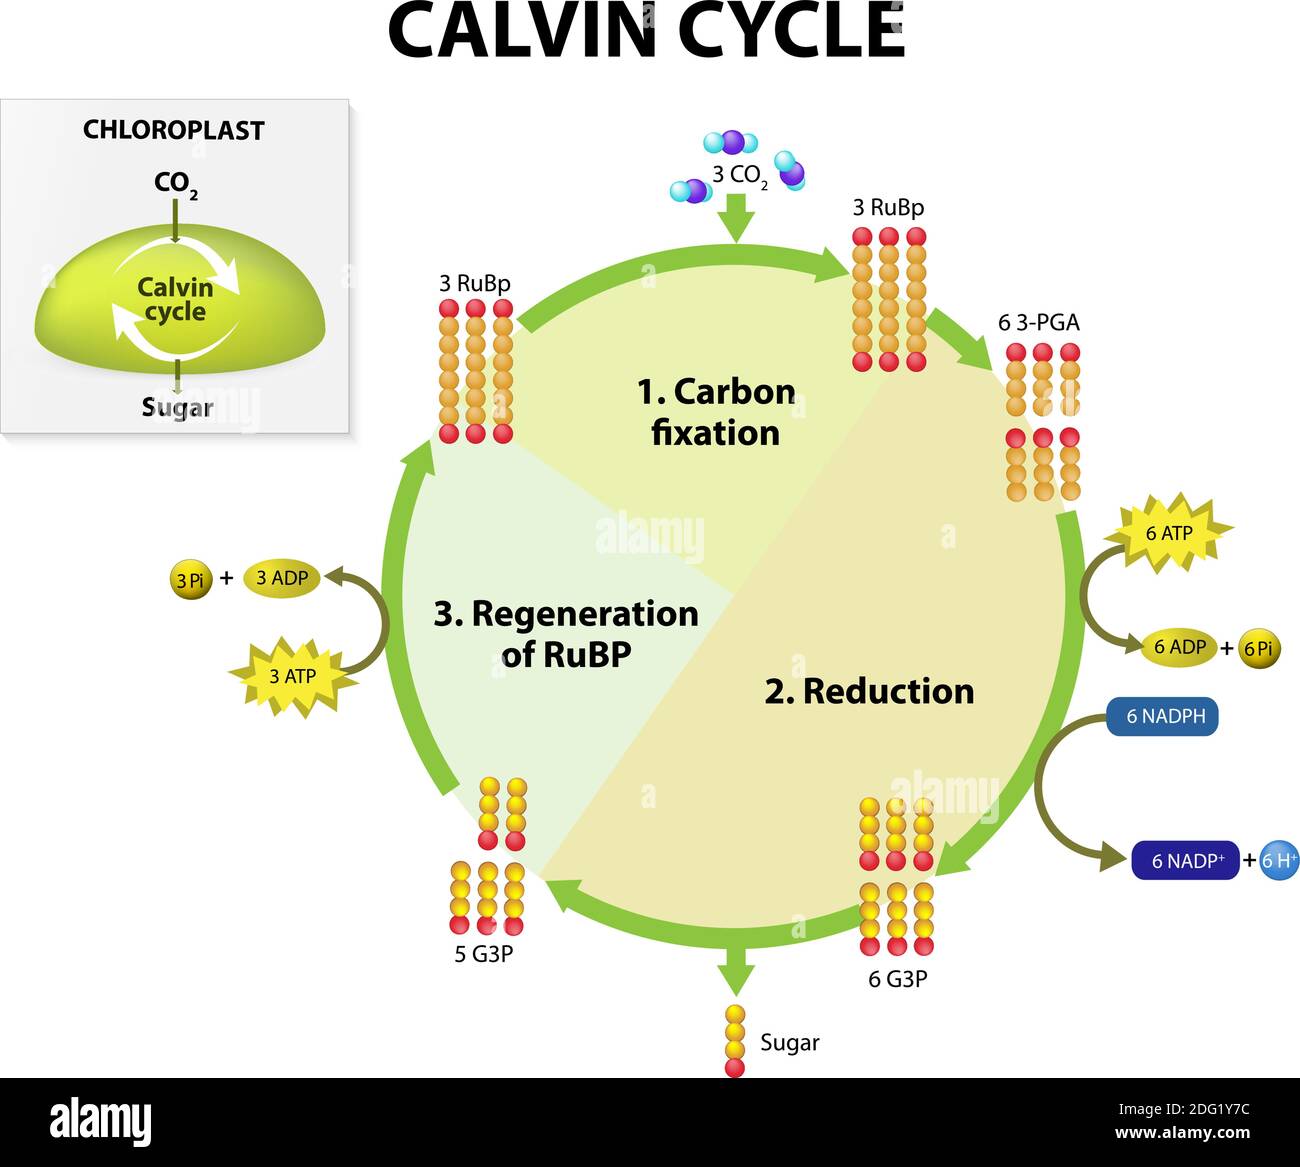 Photosynthèse. cycle de calvin dans le chloroplaste. Le cycle de Calvin produit du sucre à partir de dioxyde de carbone. Ce schéma présente des représentations simplifiées Illustration de Vecteur